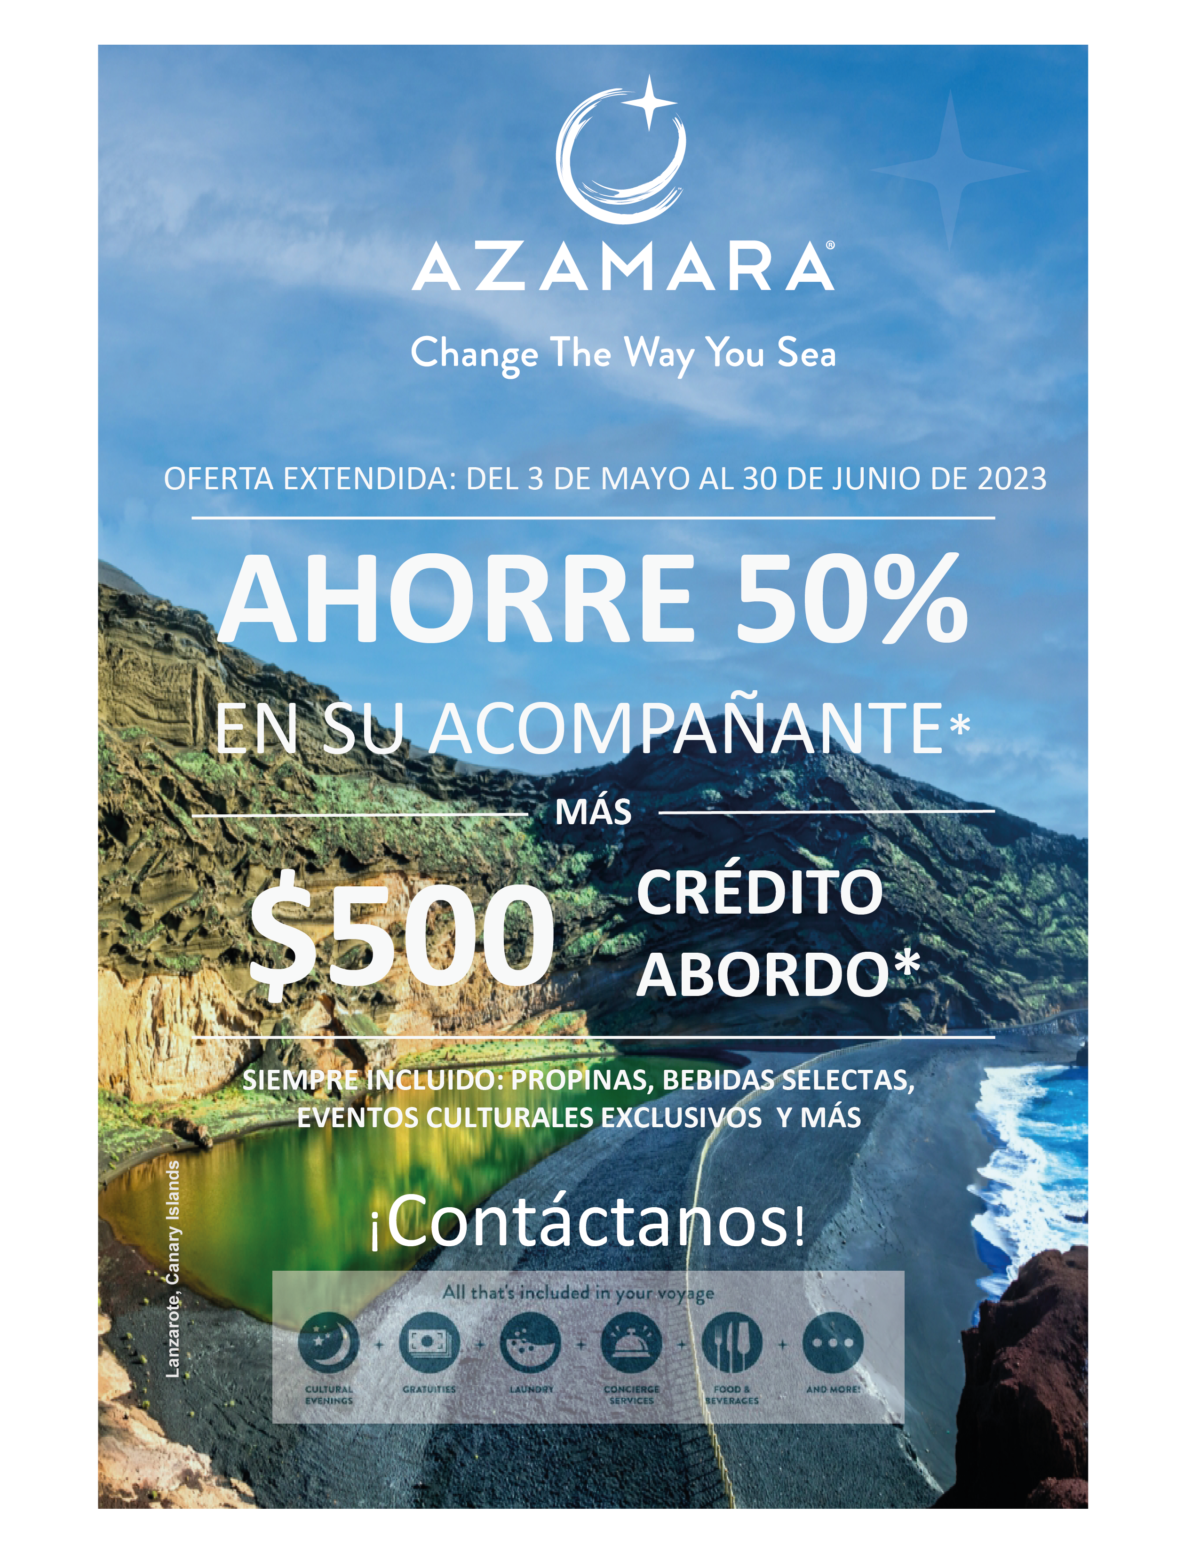 Azamara, lazaronte, islas Canarias, Oferta ahorro 50% y $500 USD crédito a bordo, Promoción Extendida Azamara